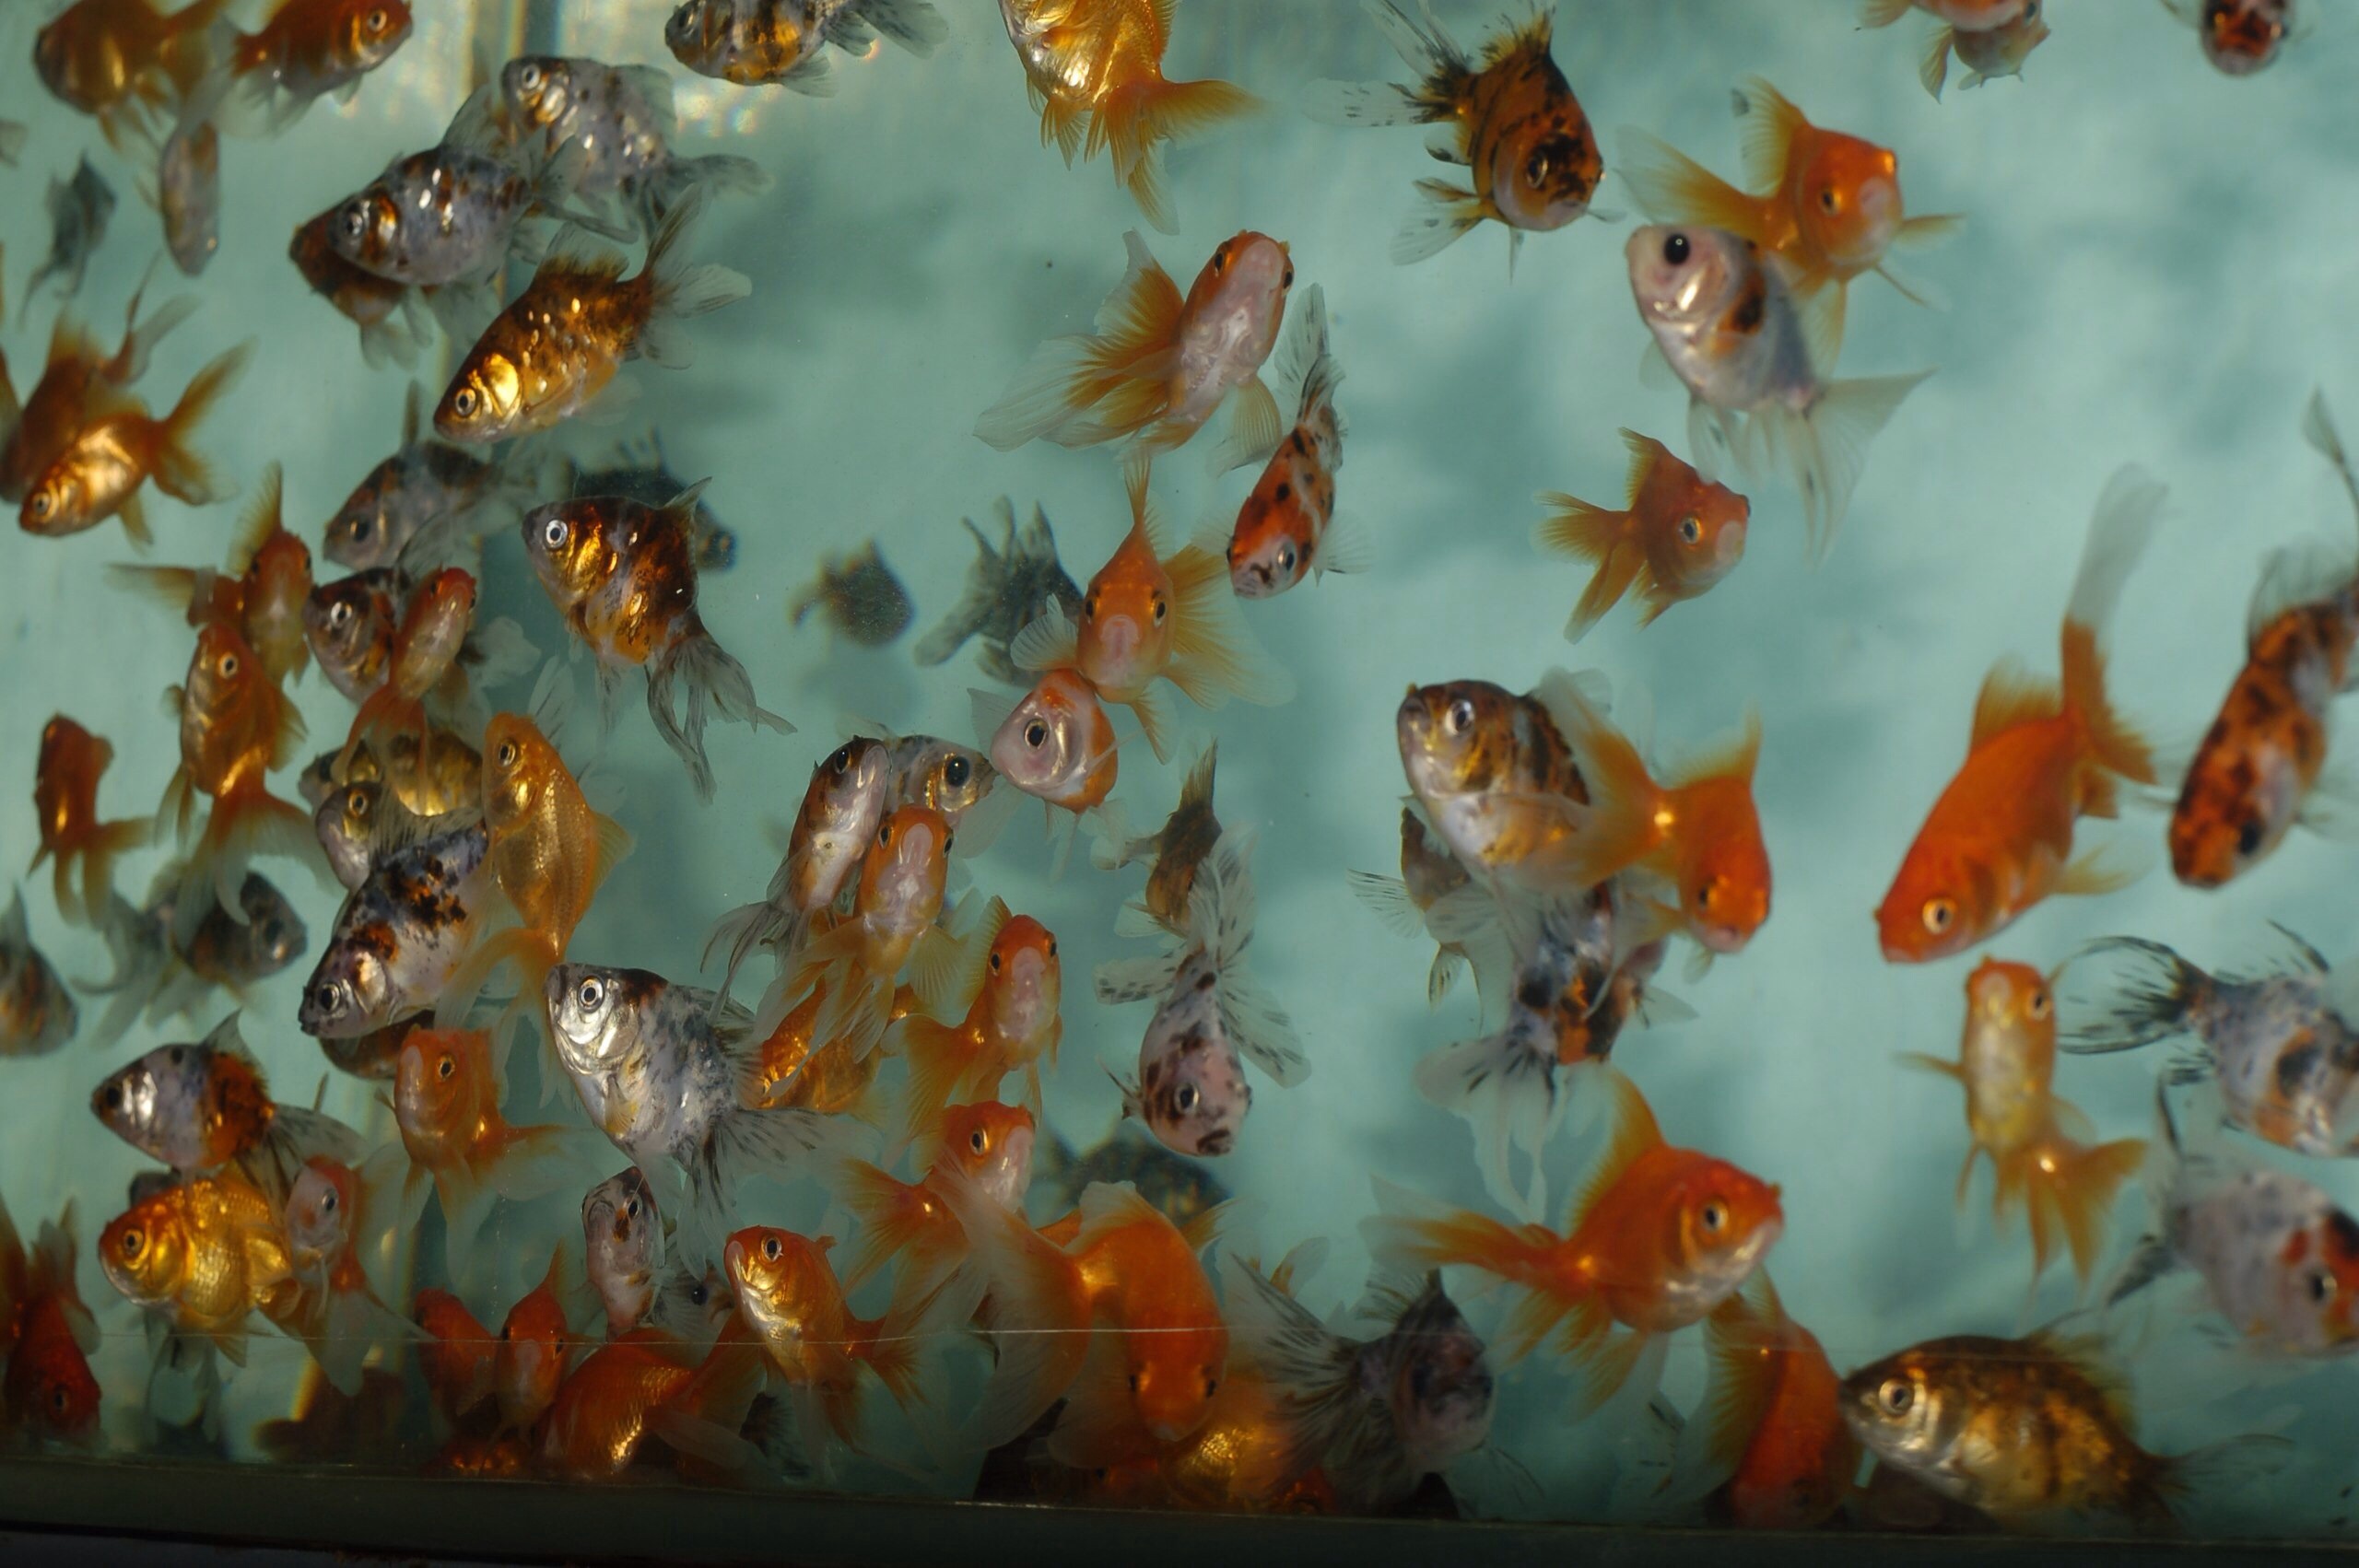 Продать аквариумных рыбок. Разведение золотых рыбок в аквариуме. Реклама продажи аквариумных рыбок. Экзотические рыбы на ферме. Золотая рыбка Кемерово.